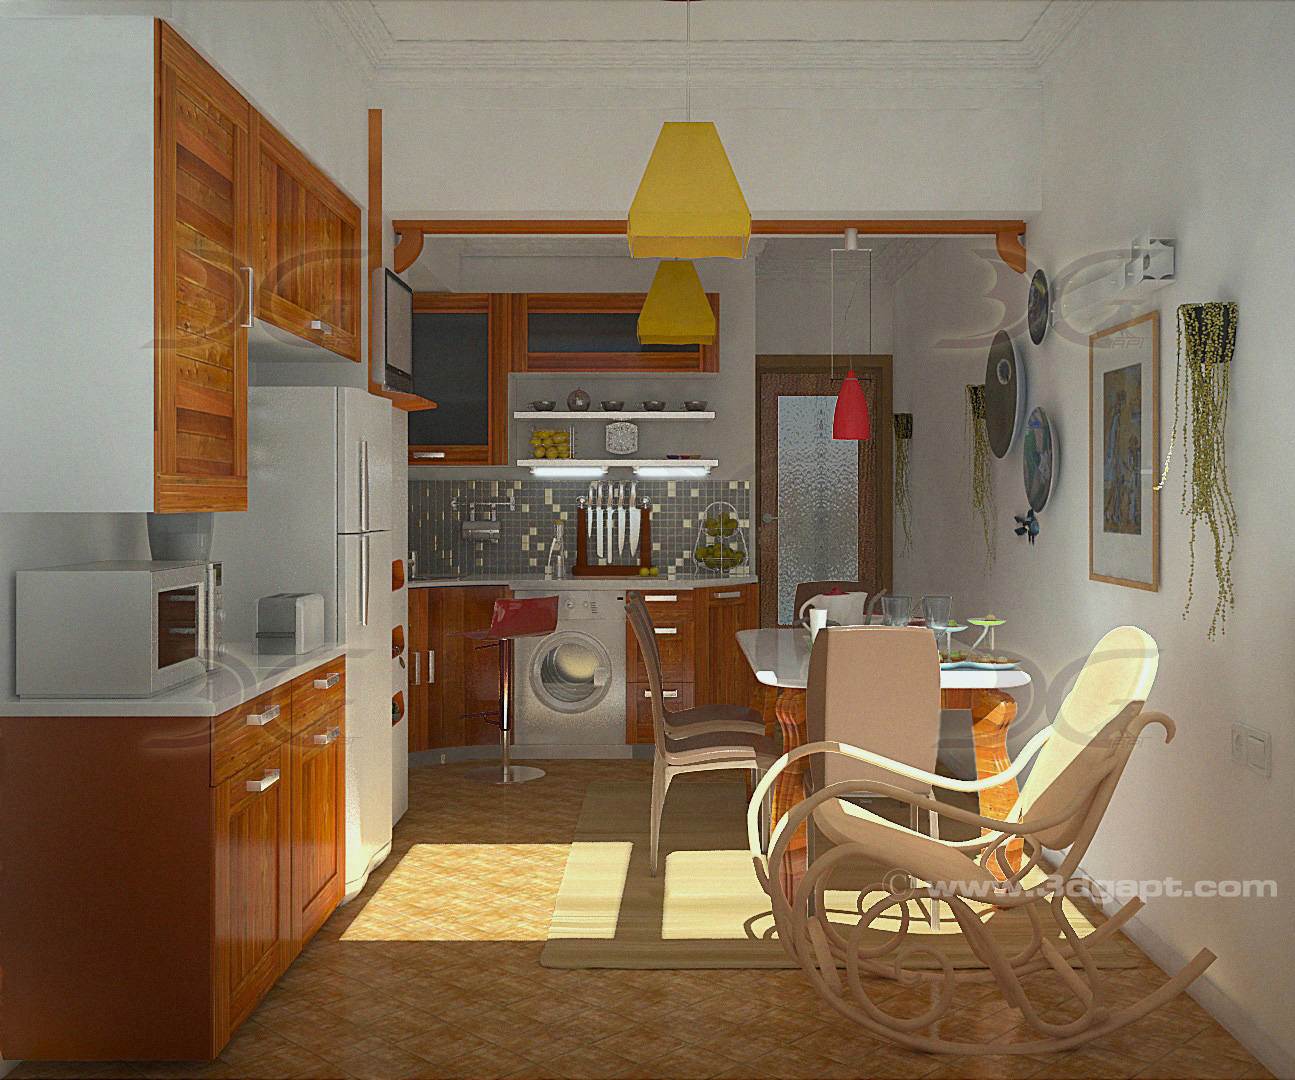 Architecture Interior Kitchen 3versions 13